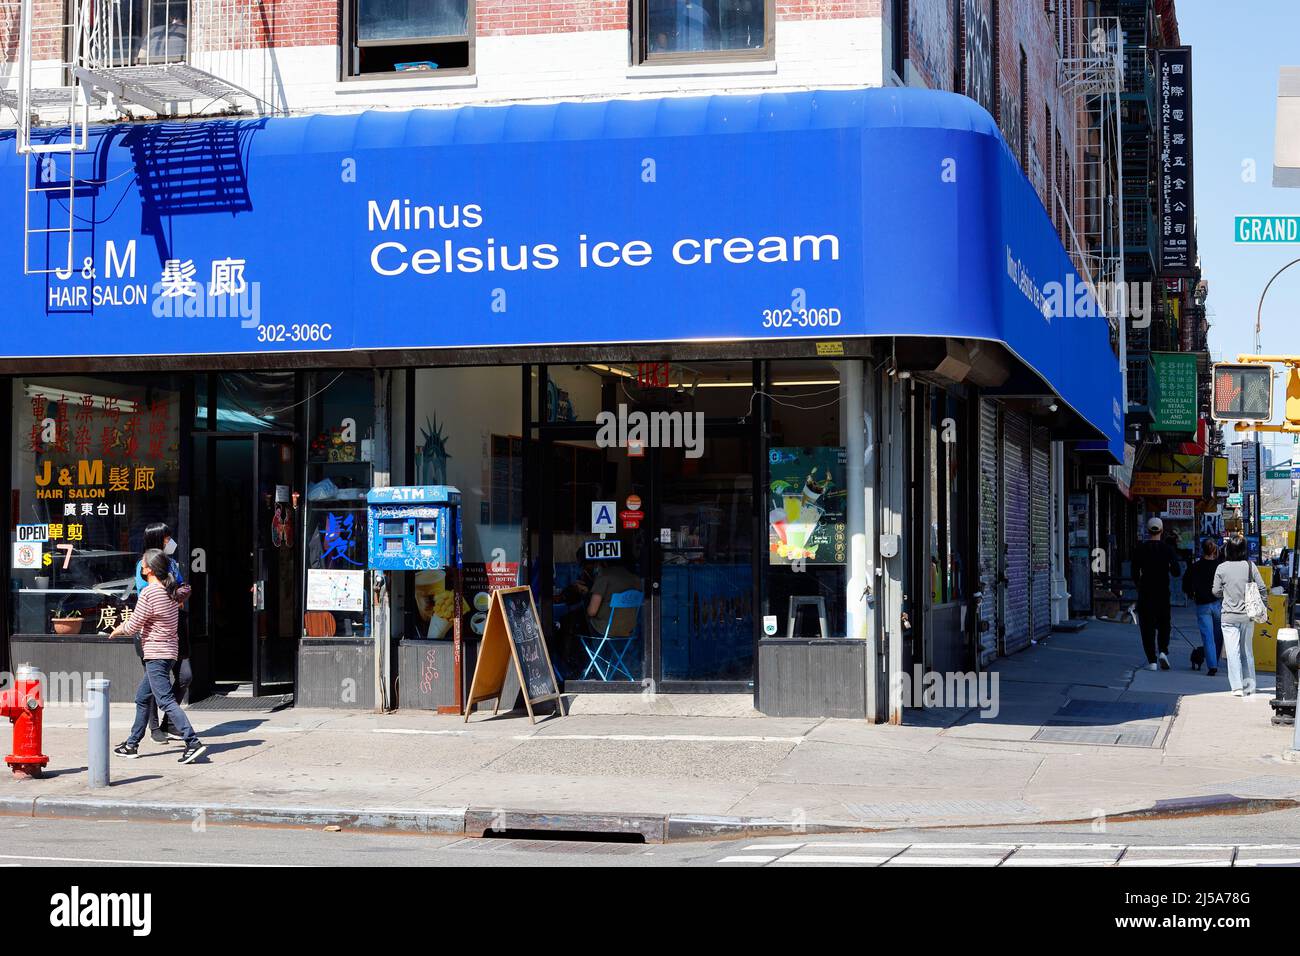 Menos Celsius Ice Cream, 302 Grand St, Nueva York, Nueva York, Nueva York, foto de una tienda de helados enrollados en el Lower East Side, Chinatown. Foto de stock